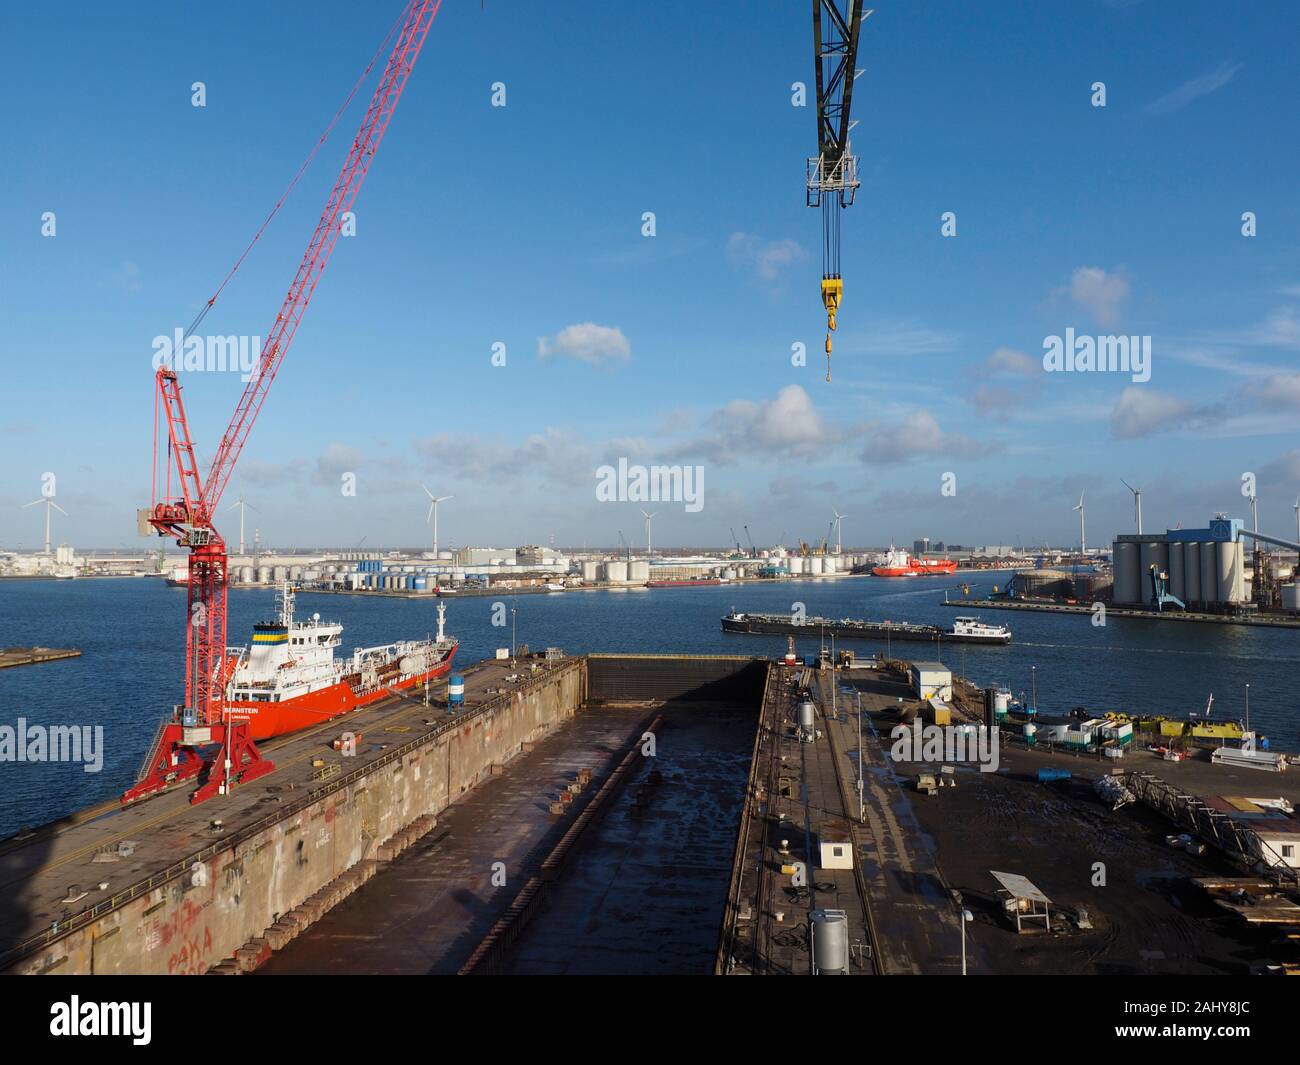 Der Antwerpener Hafen von einem hohen Kran gesehen, mit Dry Dock im Vordergrund, verschiedene Schiffe, und blauer Himmel. Antwerpen, Belgien Stockfoto